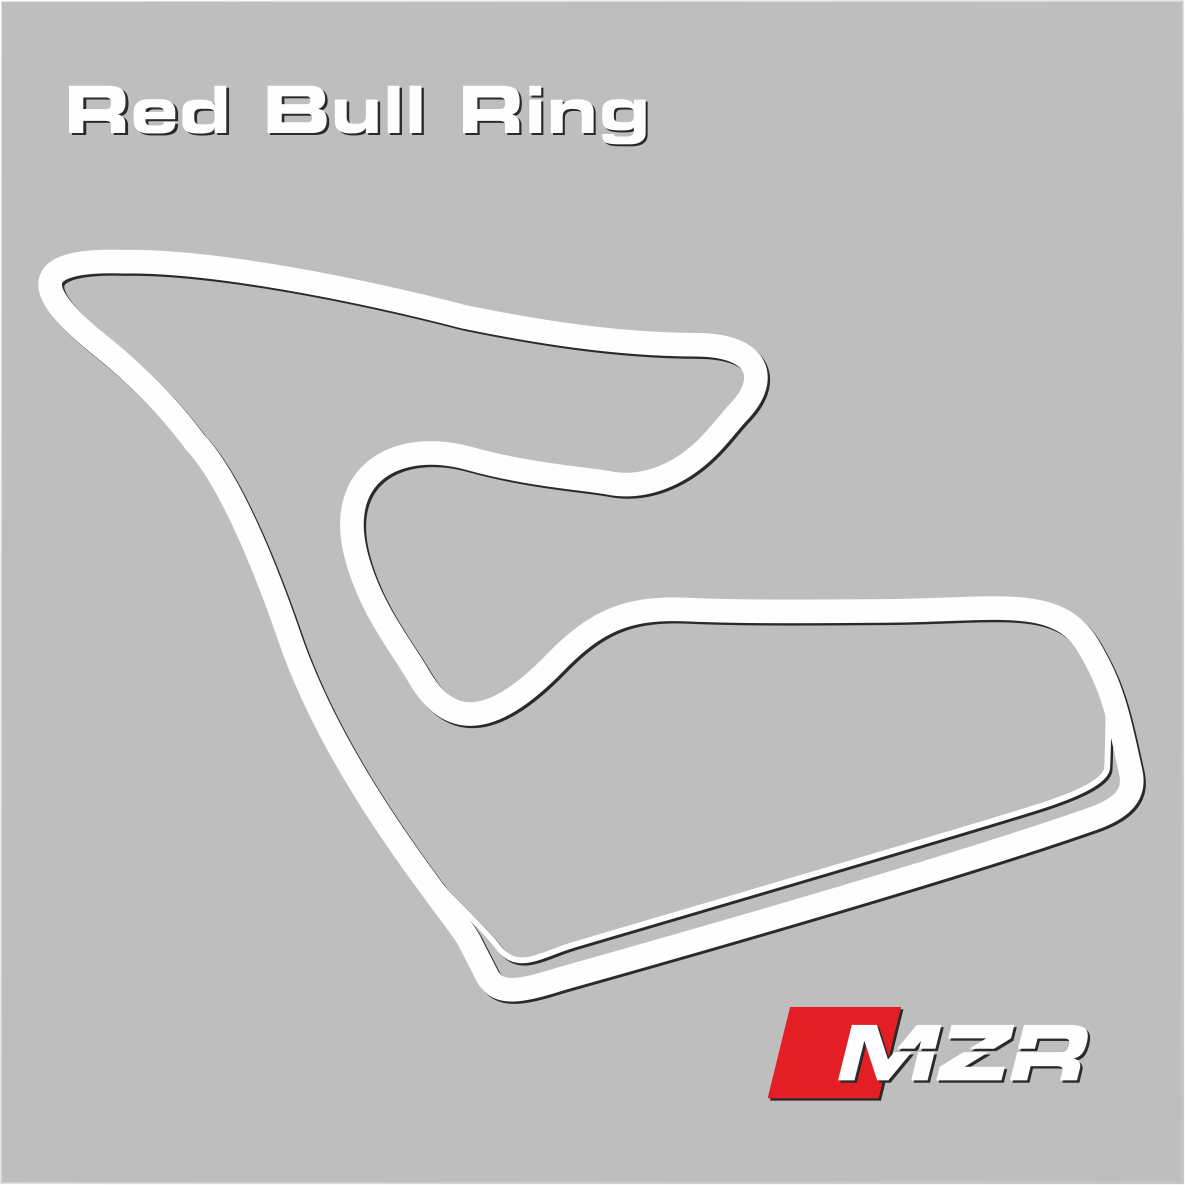 Red Bull Ring